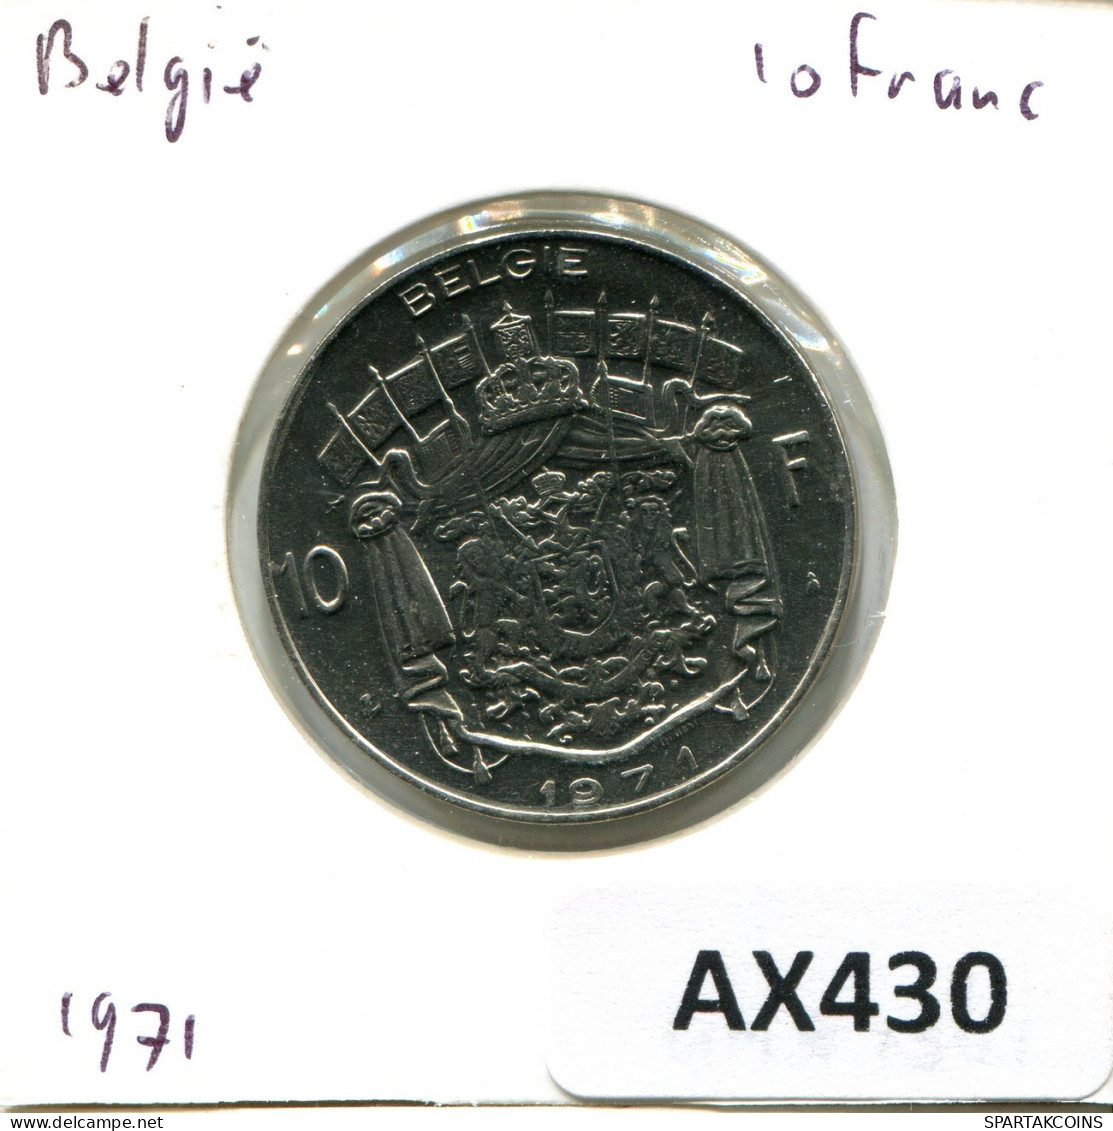 10 FRANCS 1971 BELGIUM Coin DUTCH Text #AX430.U.A - 10 Francs